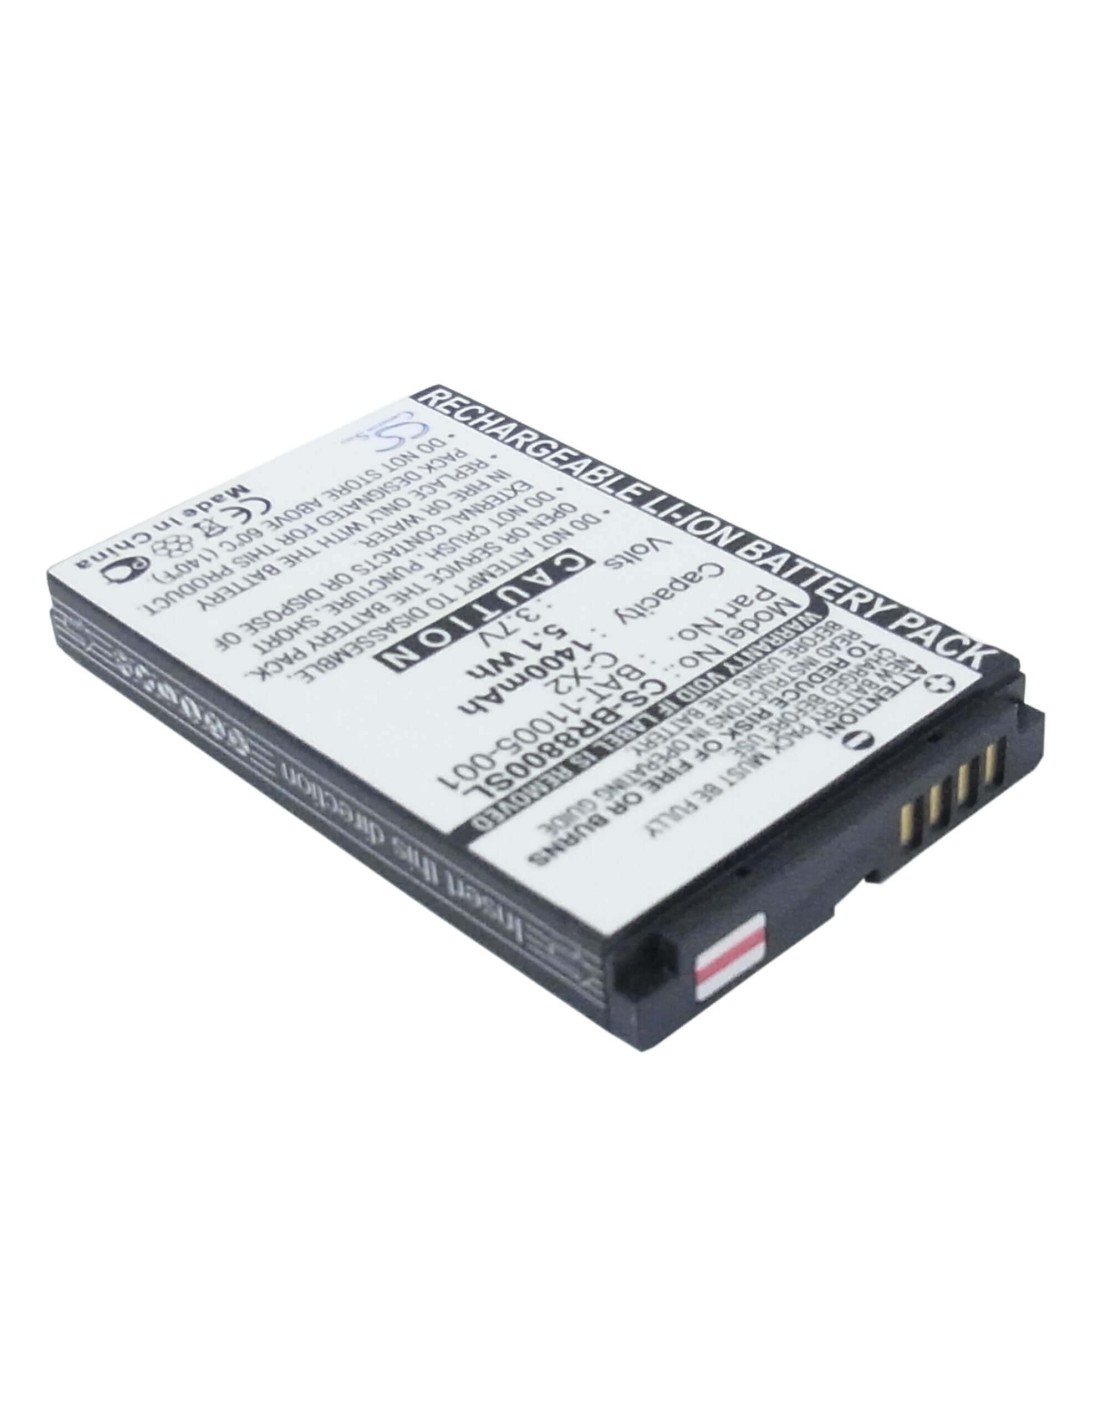 Battery for Blackberry 8800, 8800c, 8800r 3.7V, 1400mAh - 5.18Wh